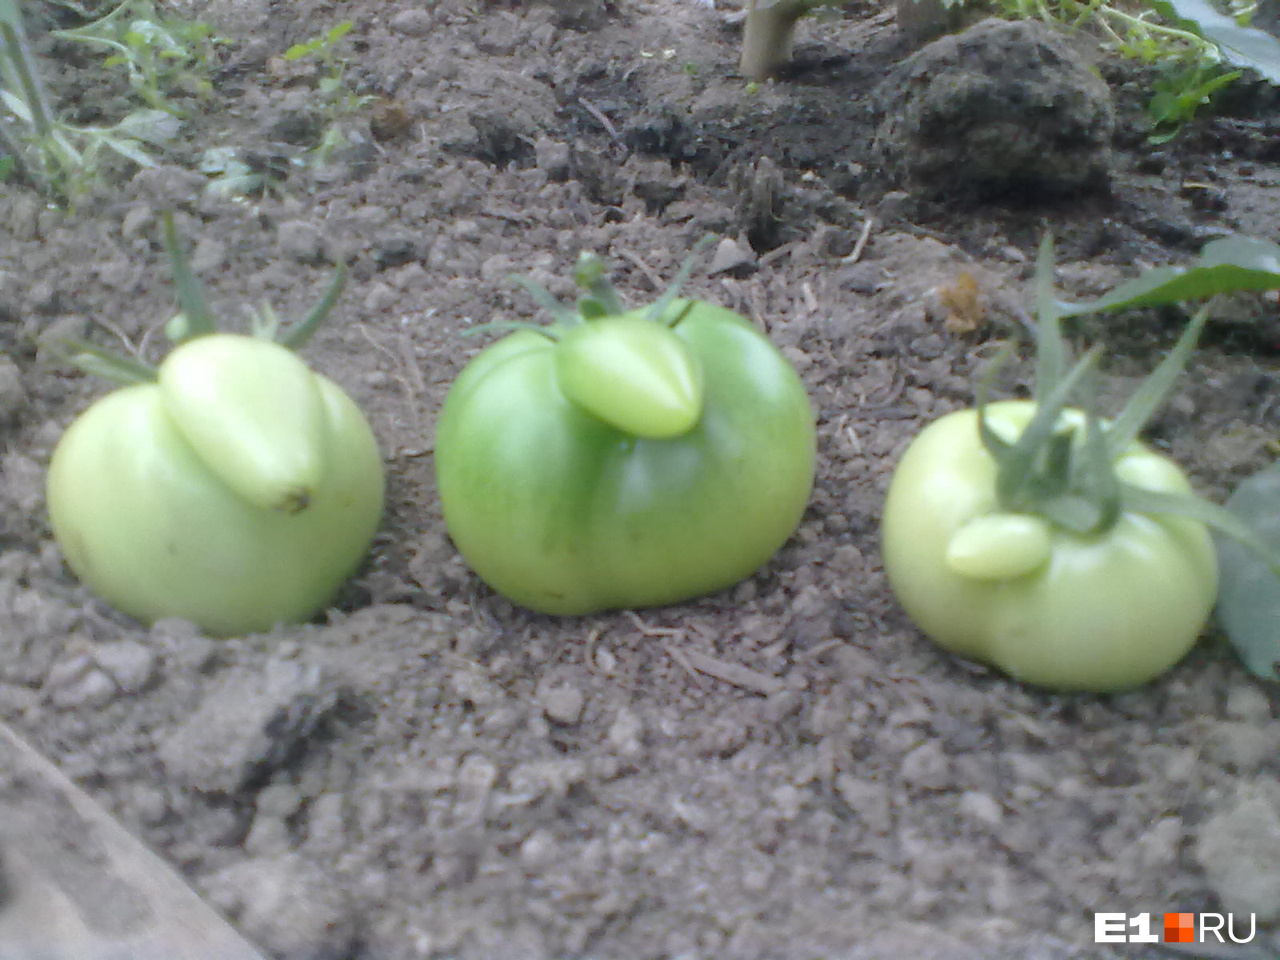 Екатеринбуржцы собрали помидоры необычной формы